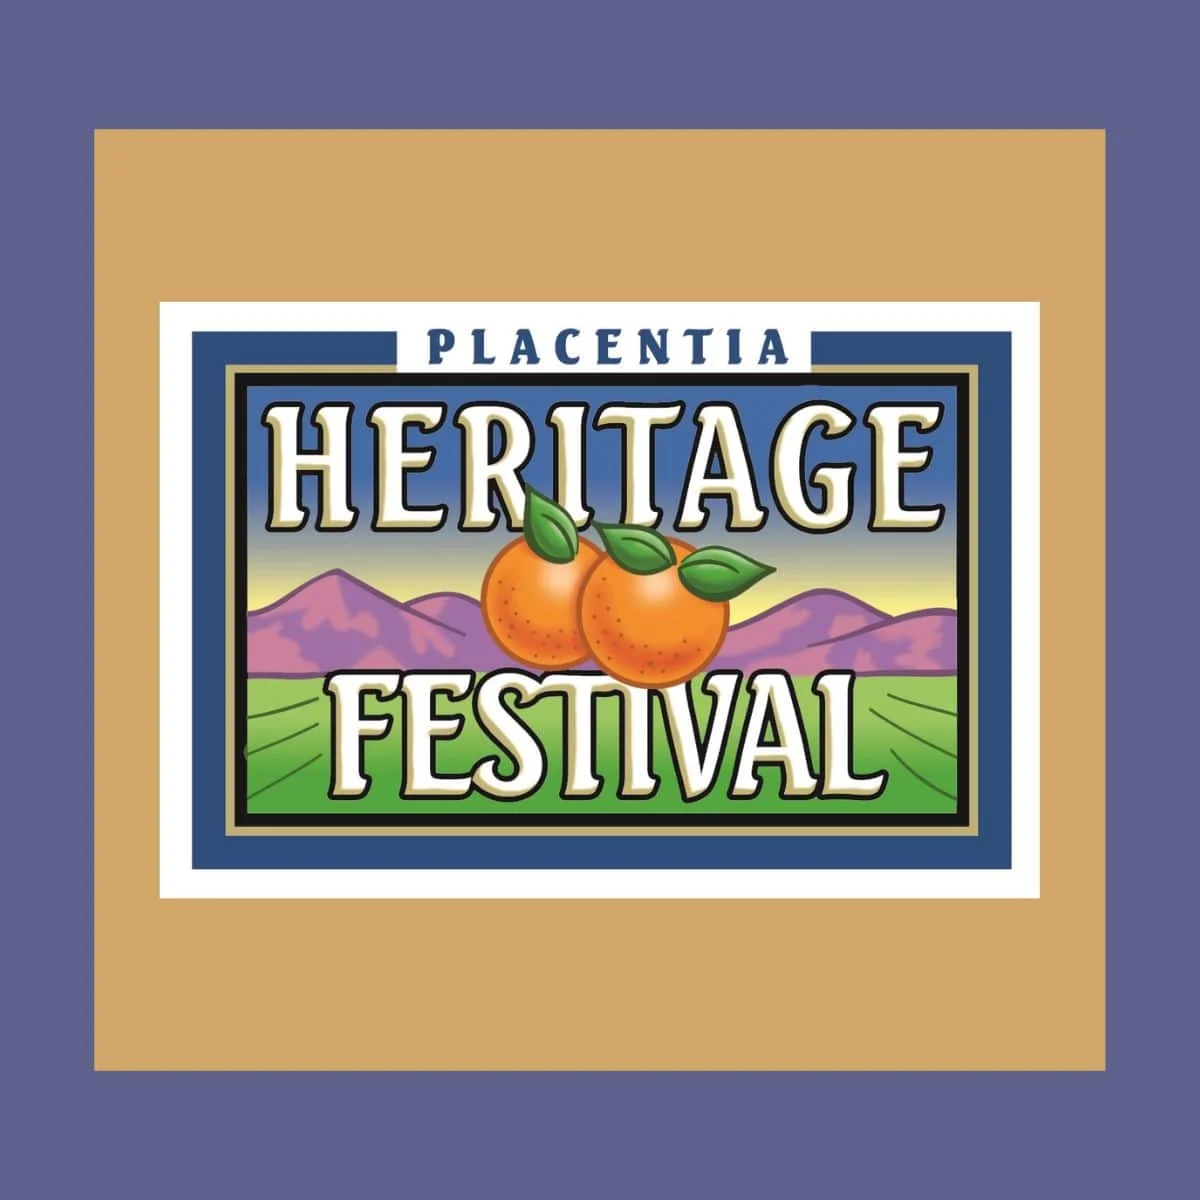 Placentia Heritage Festival & Parade